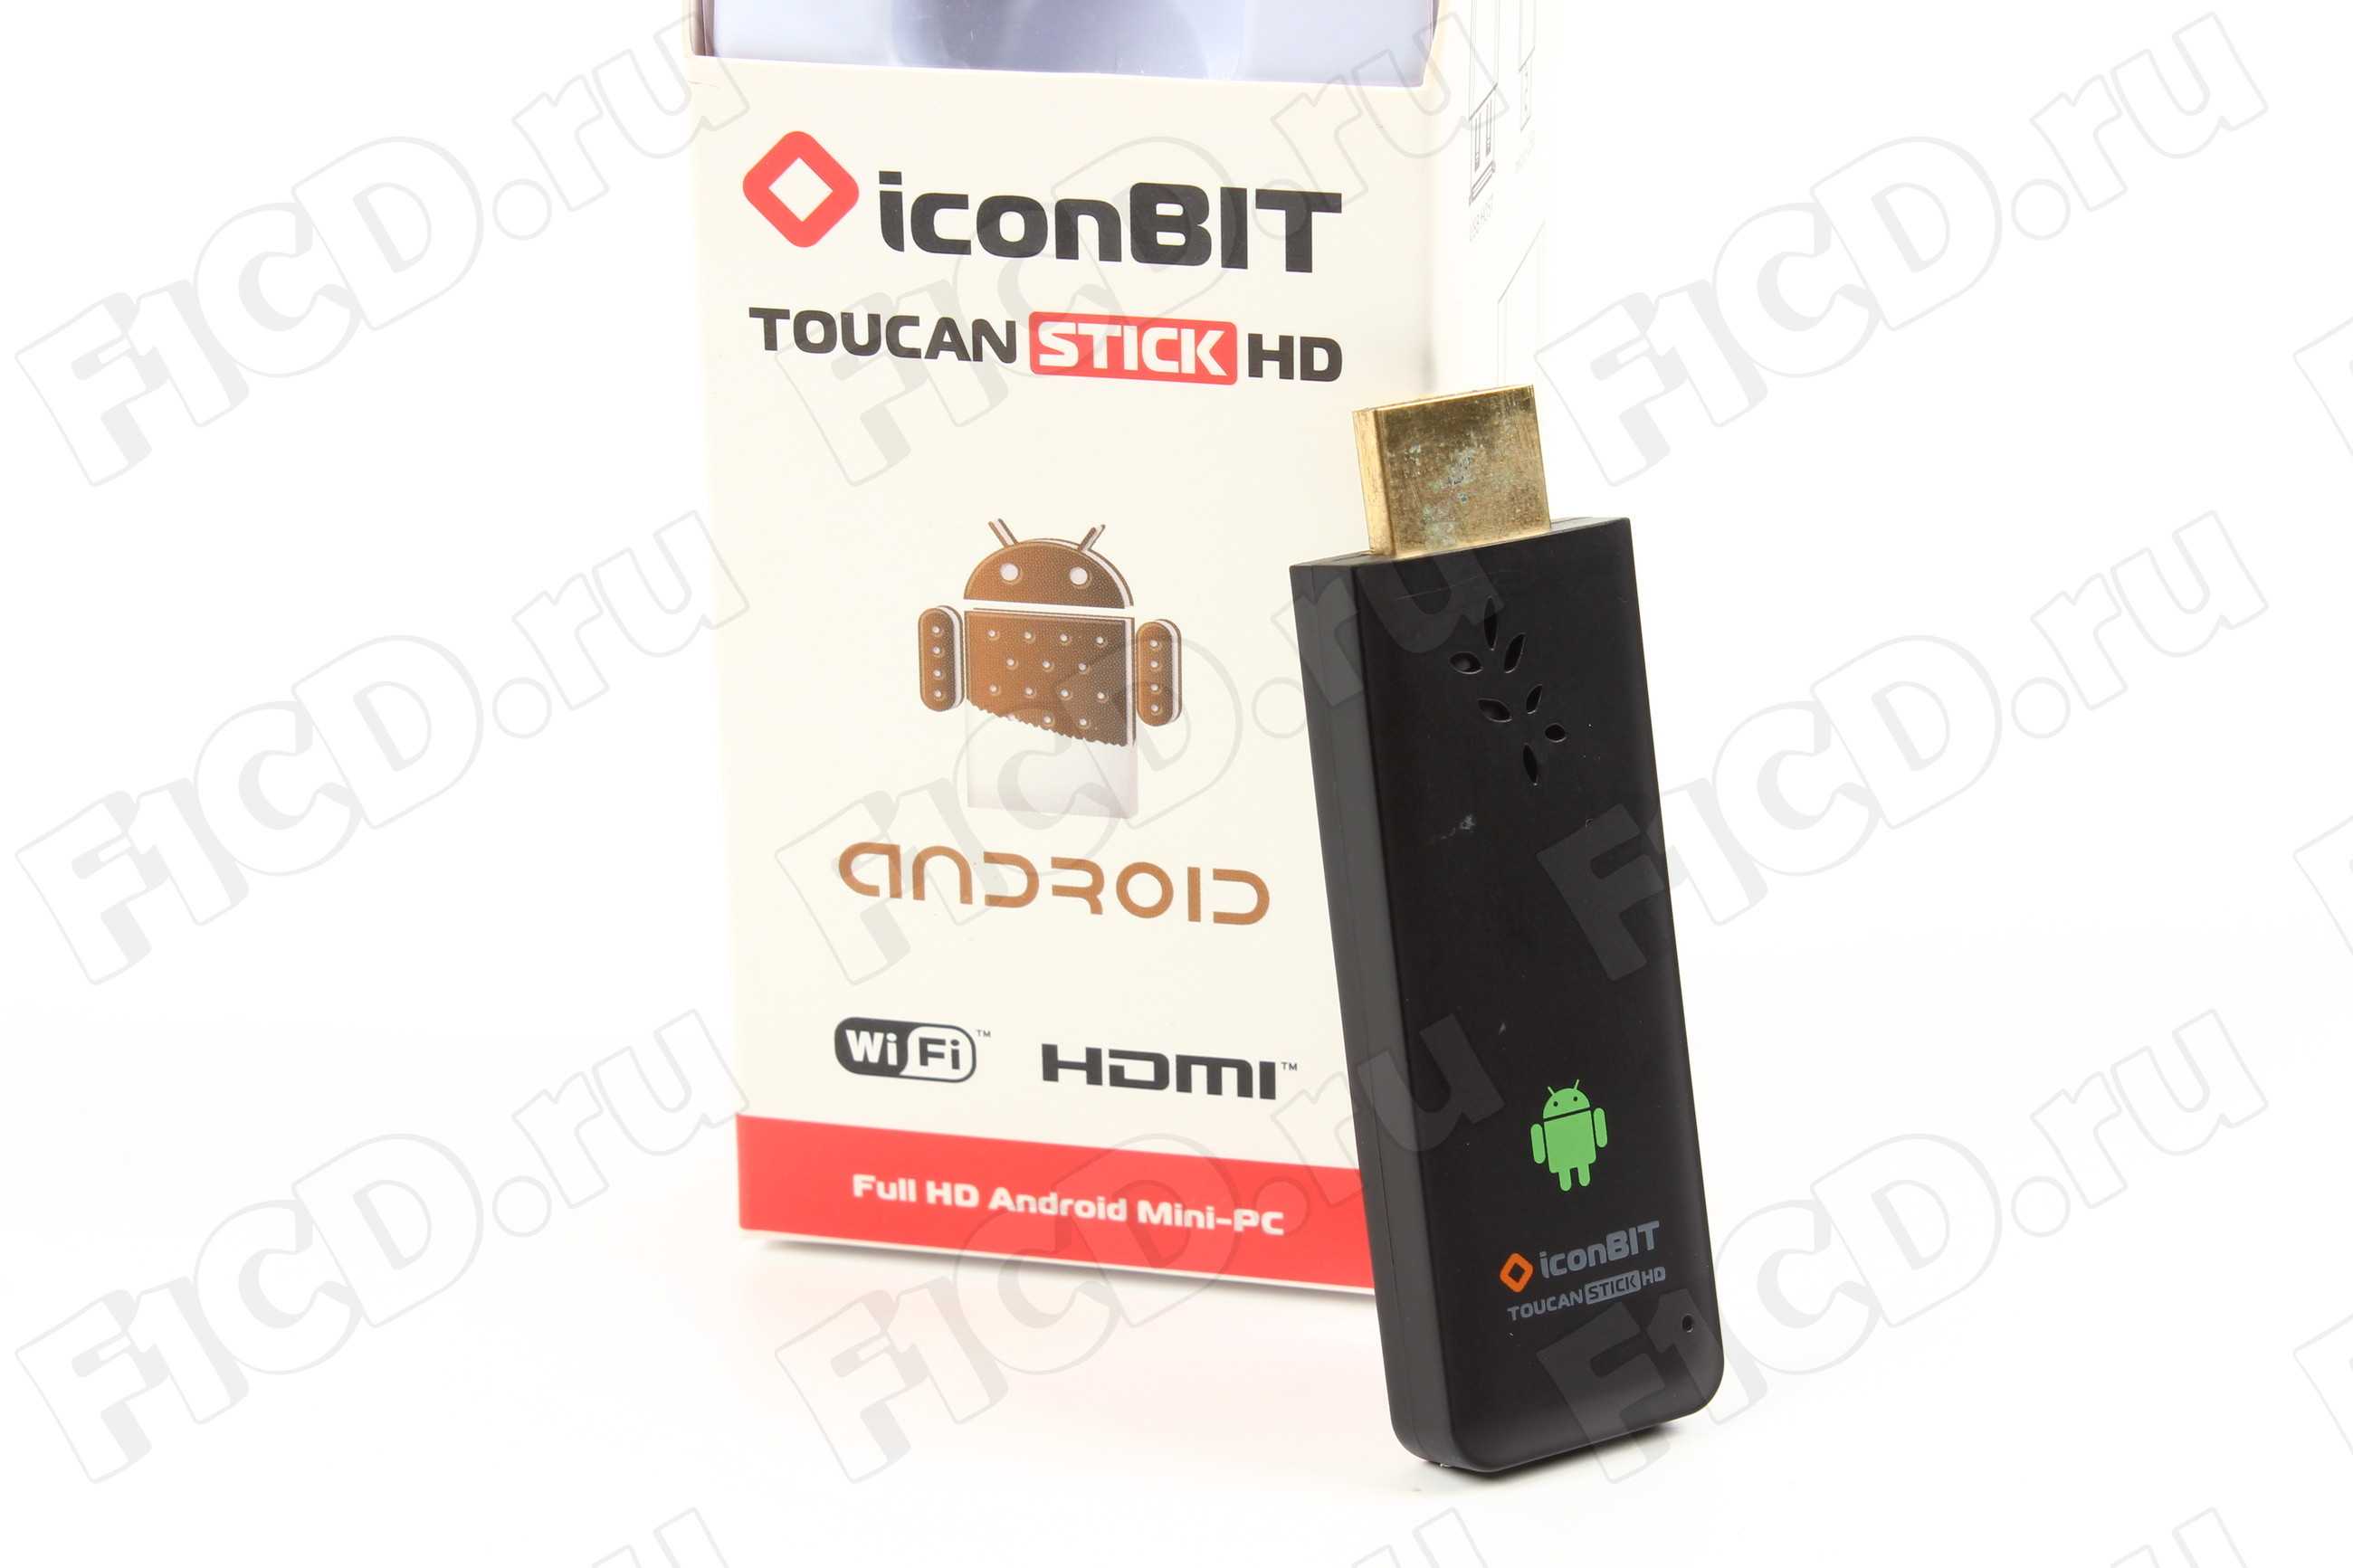 Iconbit toucan stick 4k - купить , скидки, цена, отзывы, обзор, характеристики - hd плееры